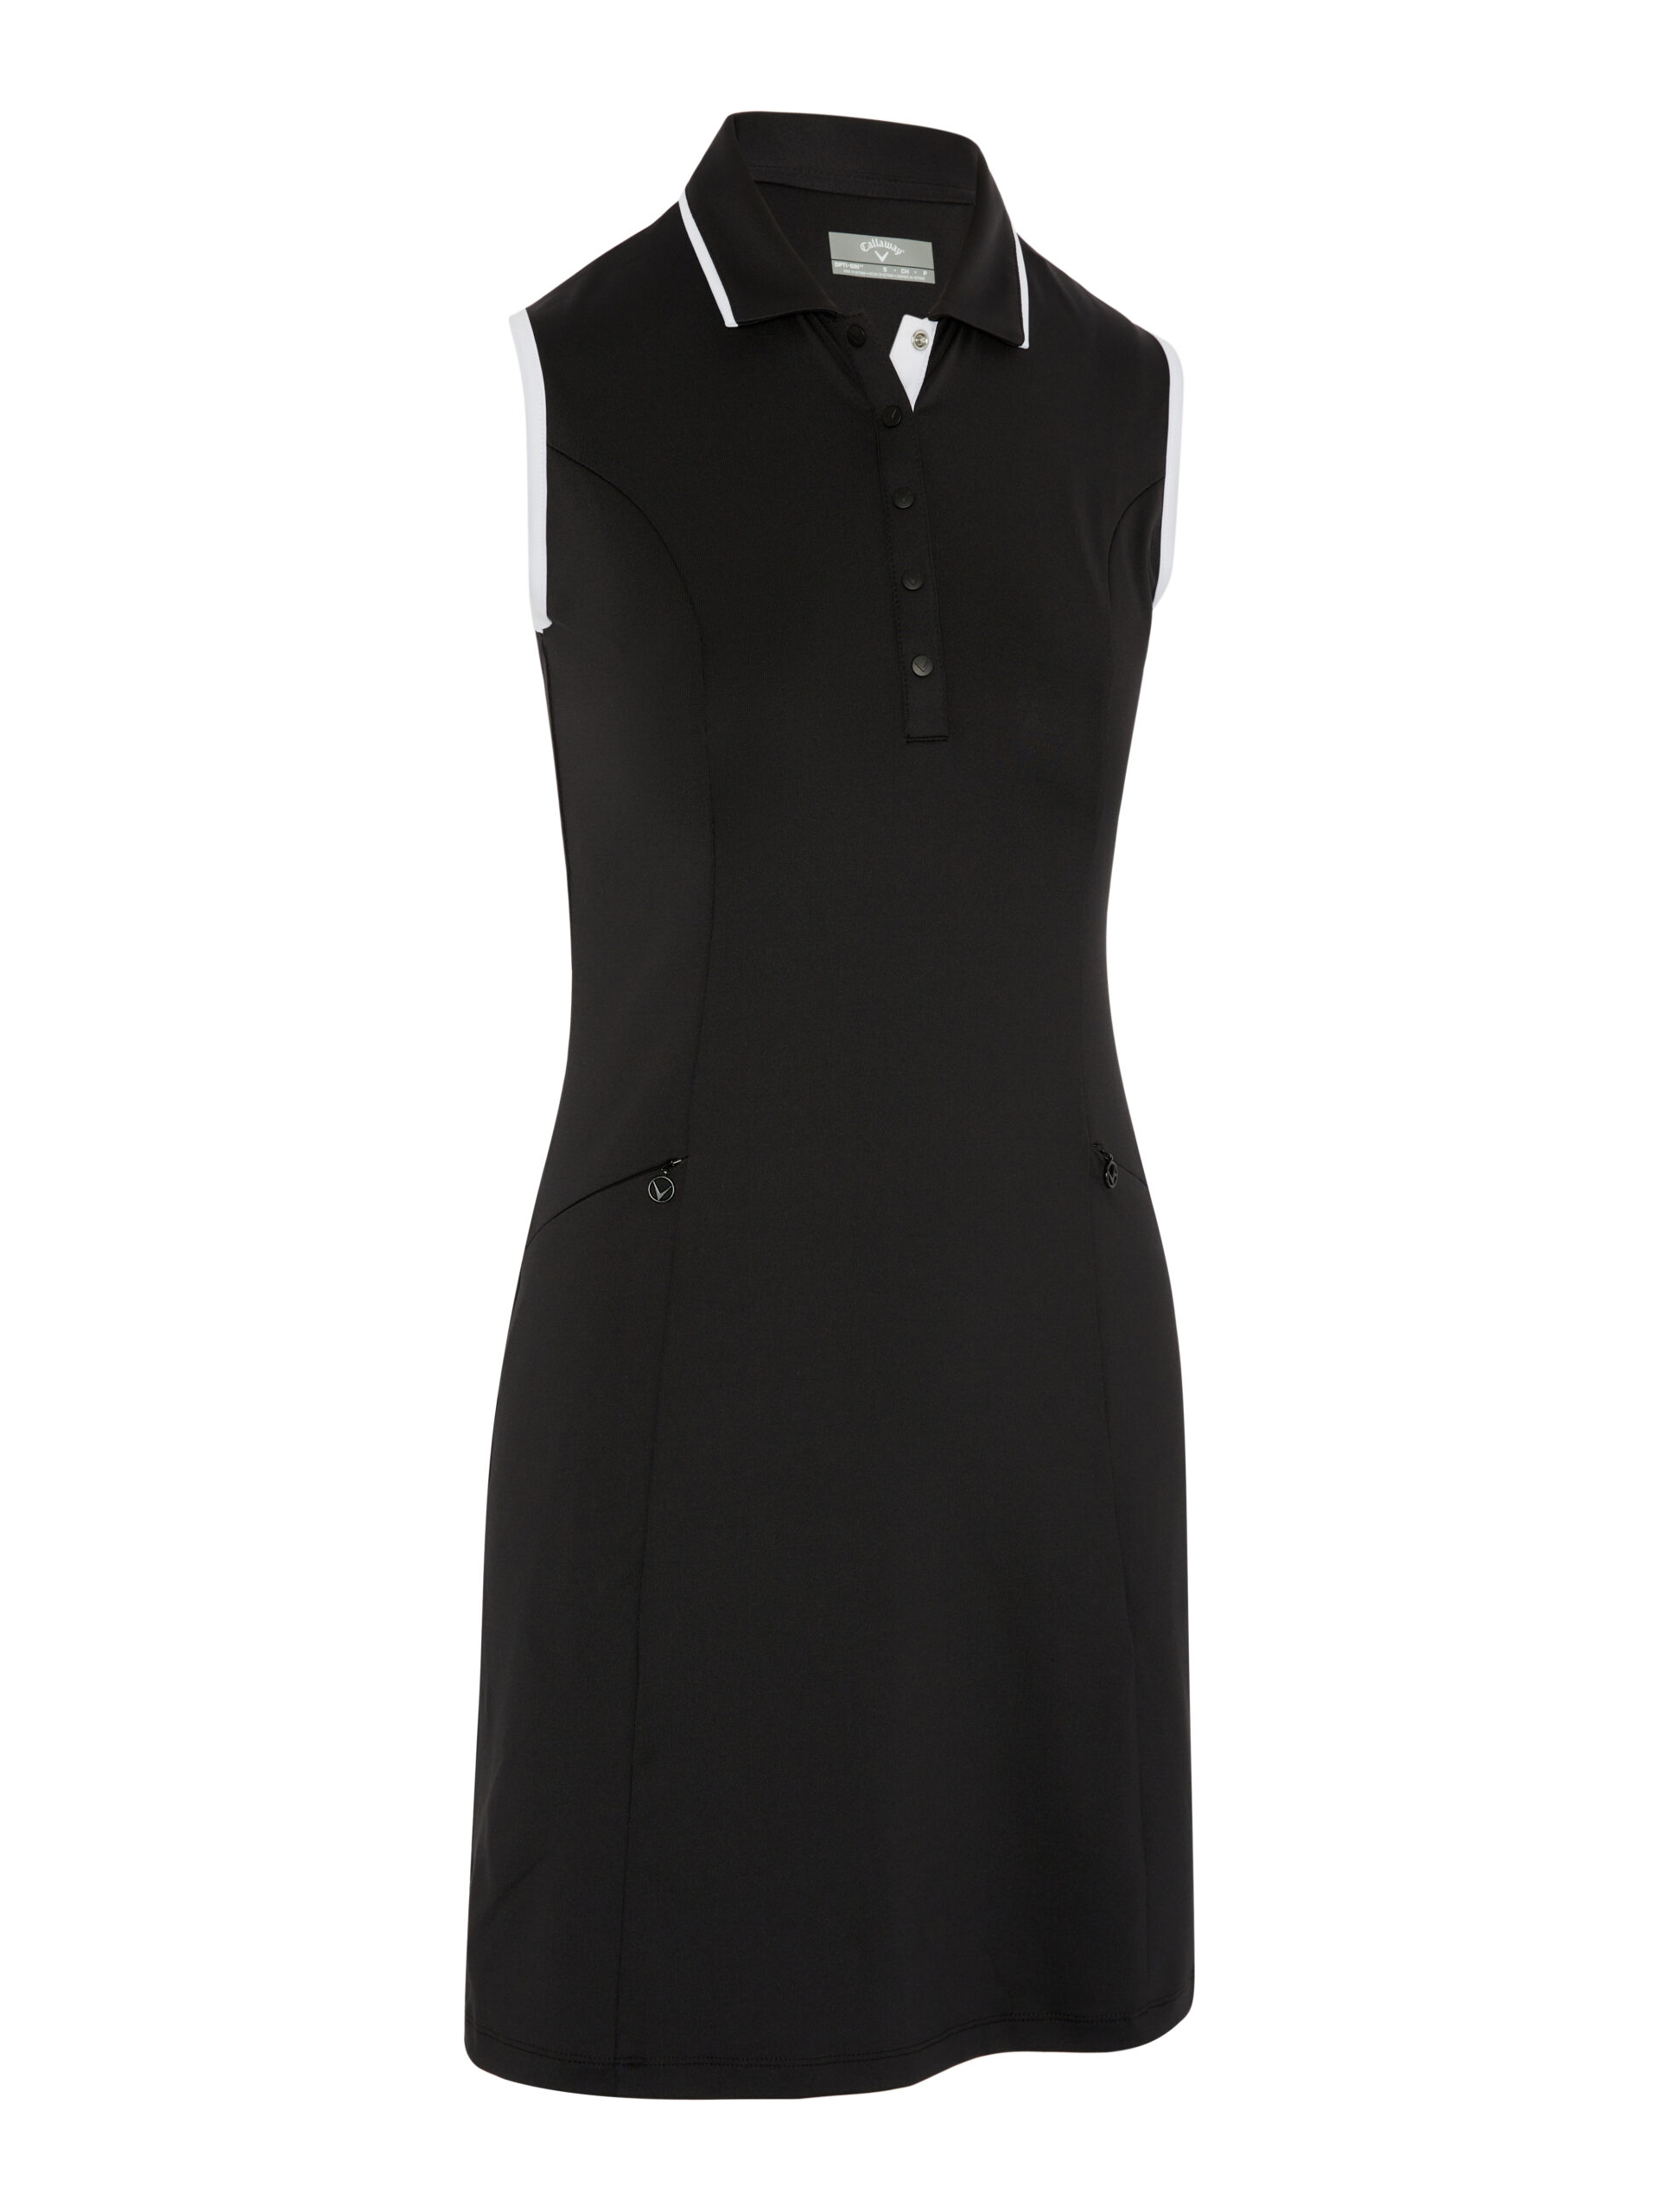 Callaway dámské golfové šaty, černé, vel. M